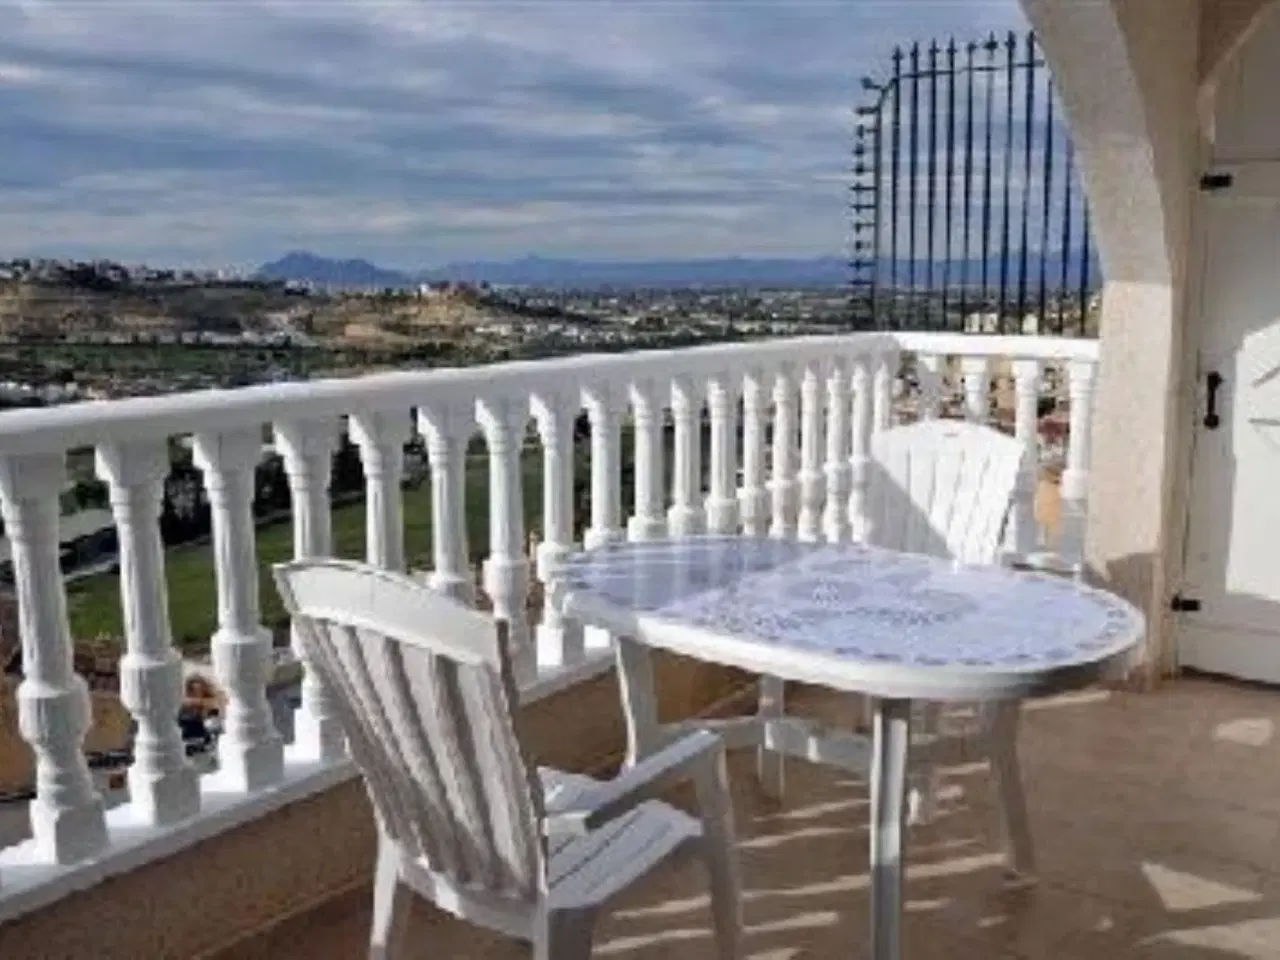 Billede 4 - Feriehus Rojales Alicante Til 6 Personer. Tre soveværelser. Skønt udsigtshus. Smukkeste udsigt over dal og bjerge. Kom til skønne Spanien. Huset ligger på stille og fredelig vej. Huset er i flere etager. Der er gårdhave, terrasse, overdækket terrasse